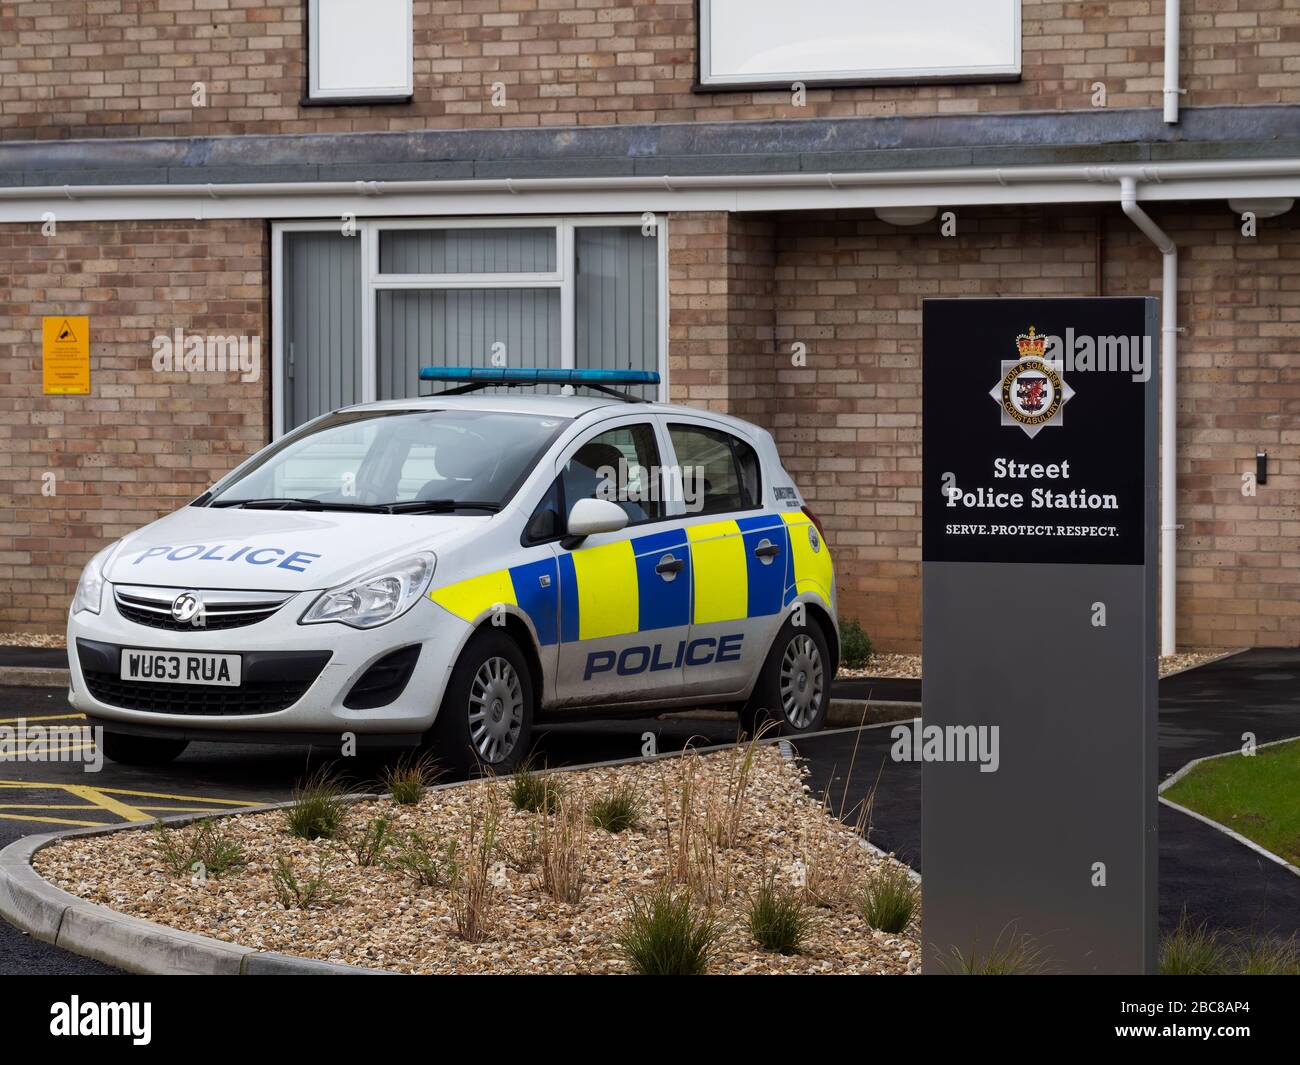 STREET, SOMERSET, ENGLAND - 9. MÄRZ 2020: Polizeiwagen vor einer Polizeistation geparkt. Sichtbares Logo Leitbild: Dienen. Schützen. Respekt. Nein Stockfoto